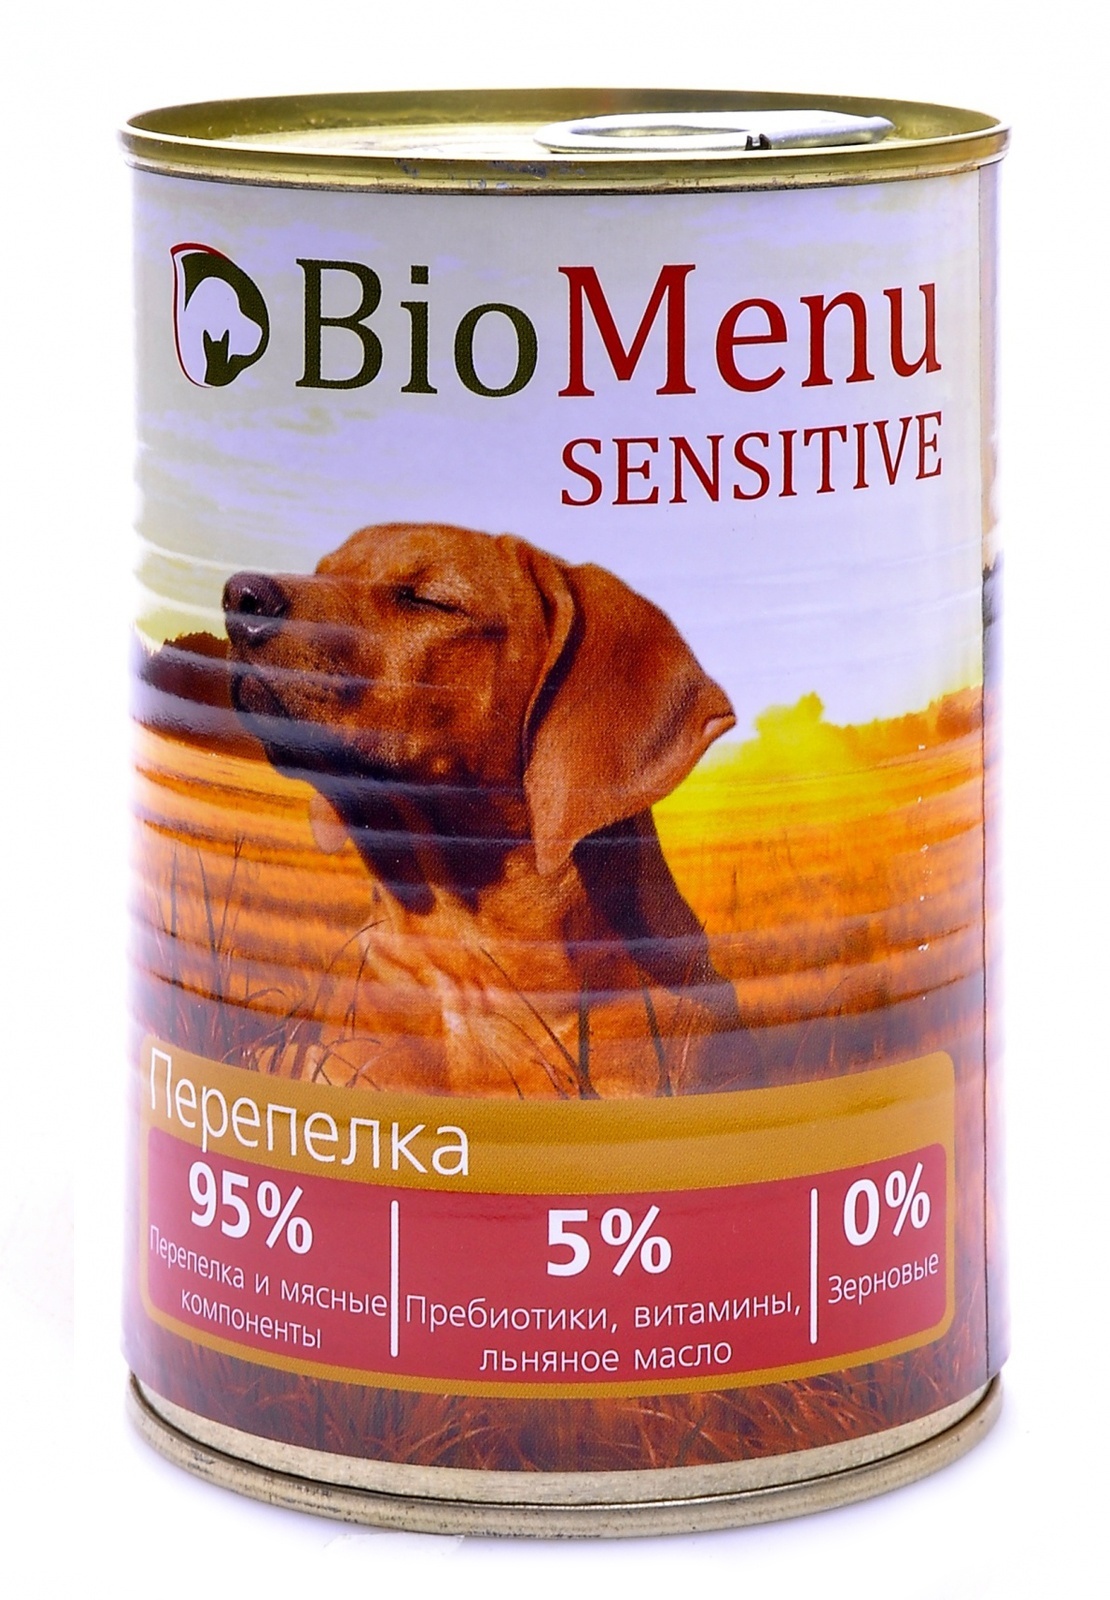 BioMenu BioMenu гипоаллергенные консервы для собак перепелка (410 г) biomenu biomenu консервы для щенков с говядиной 100 г